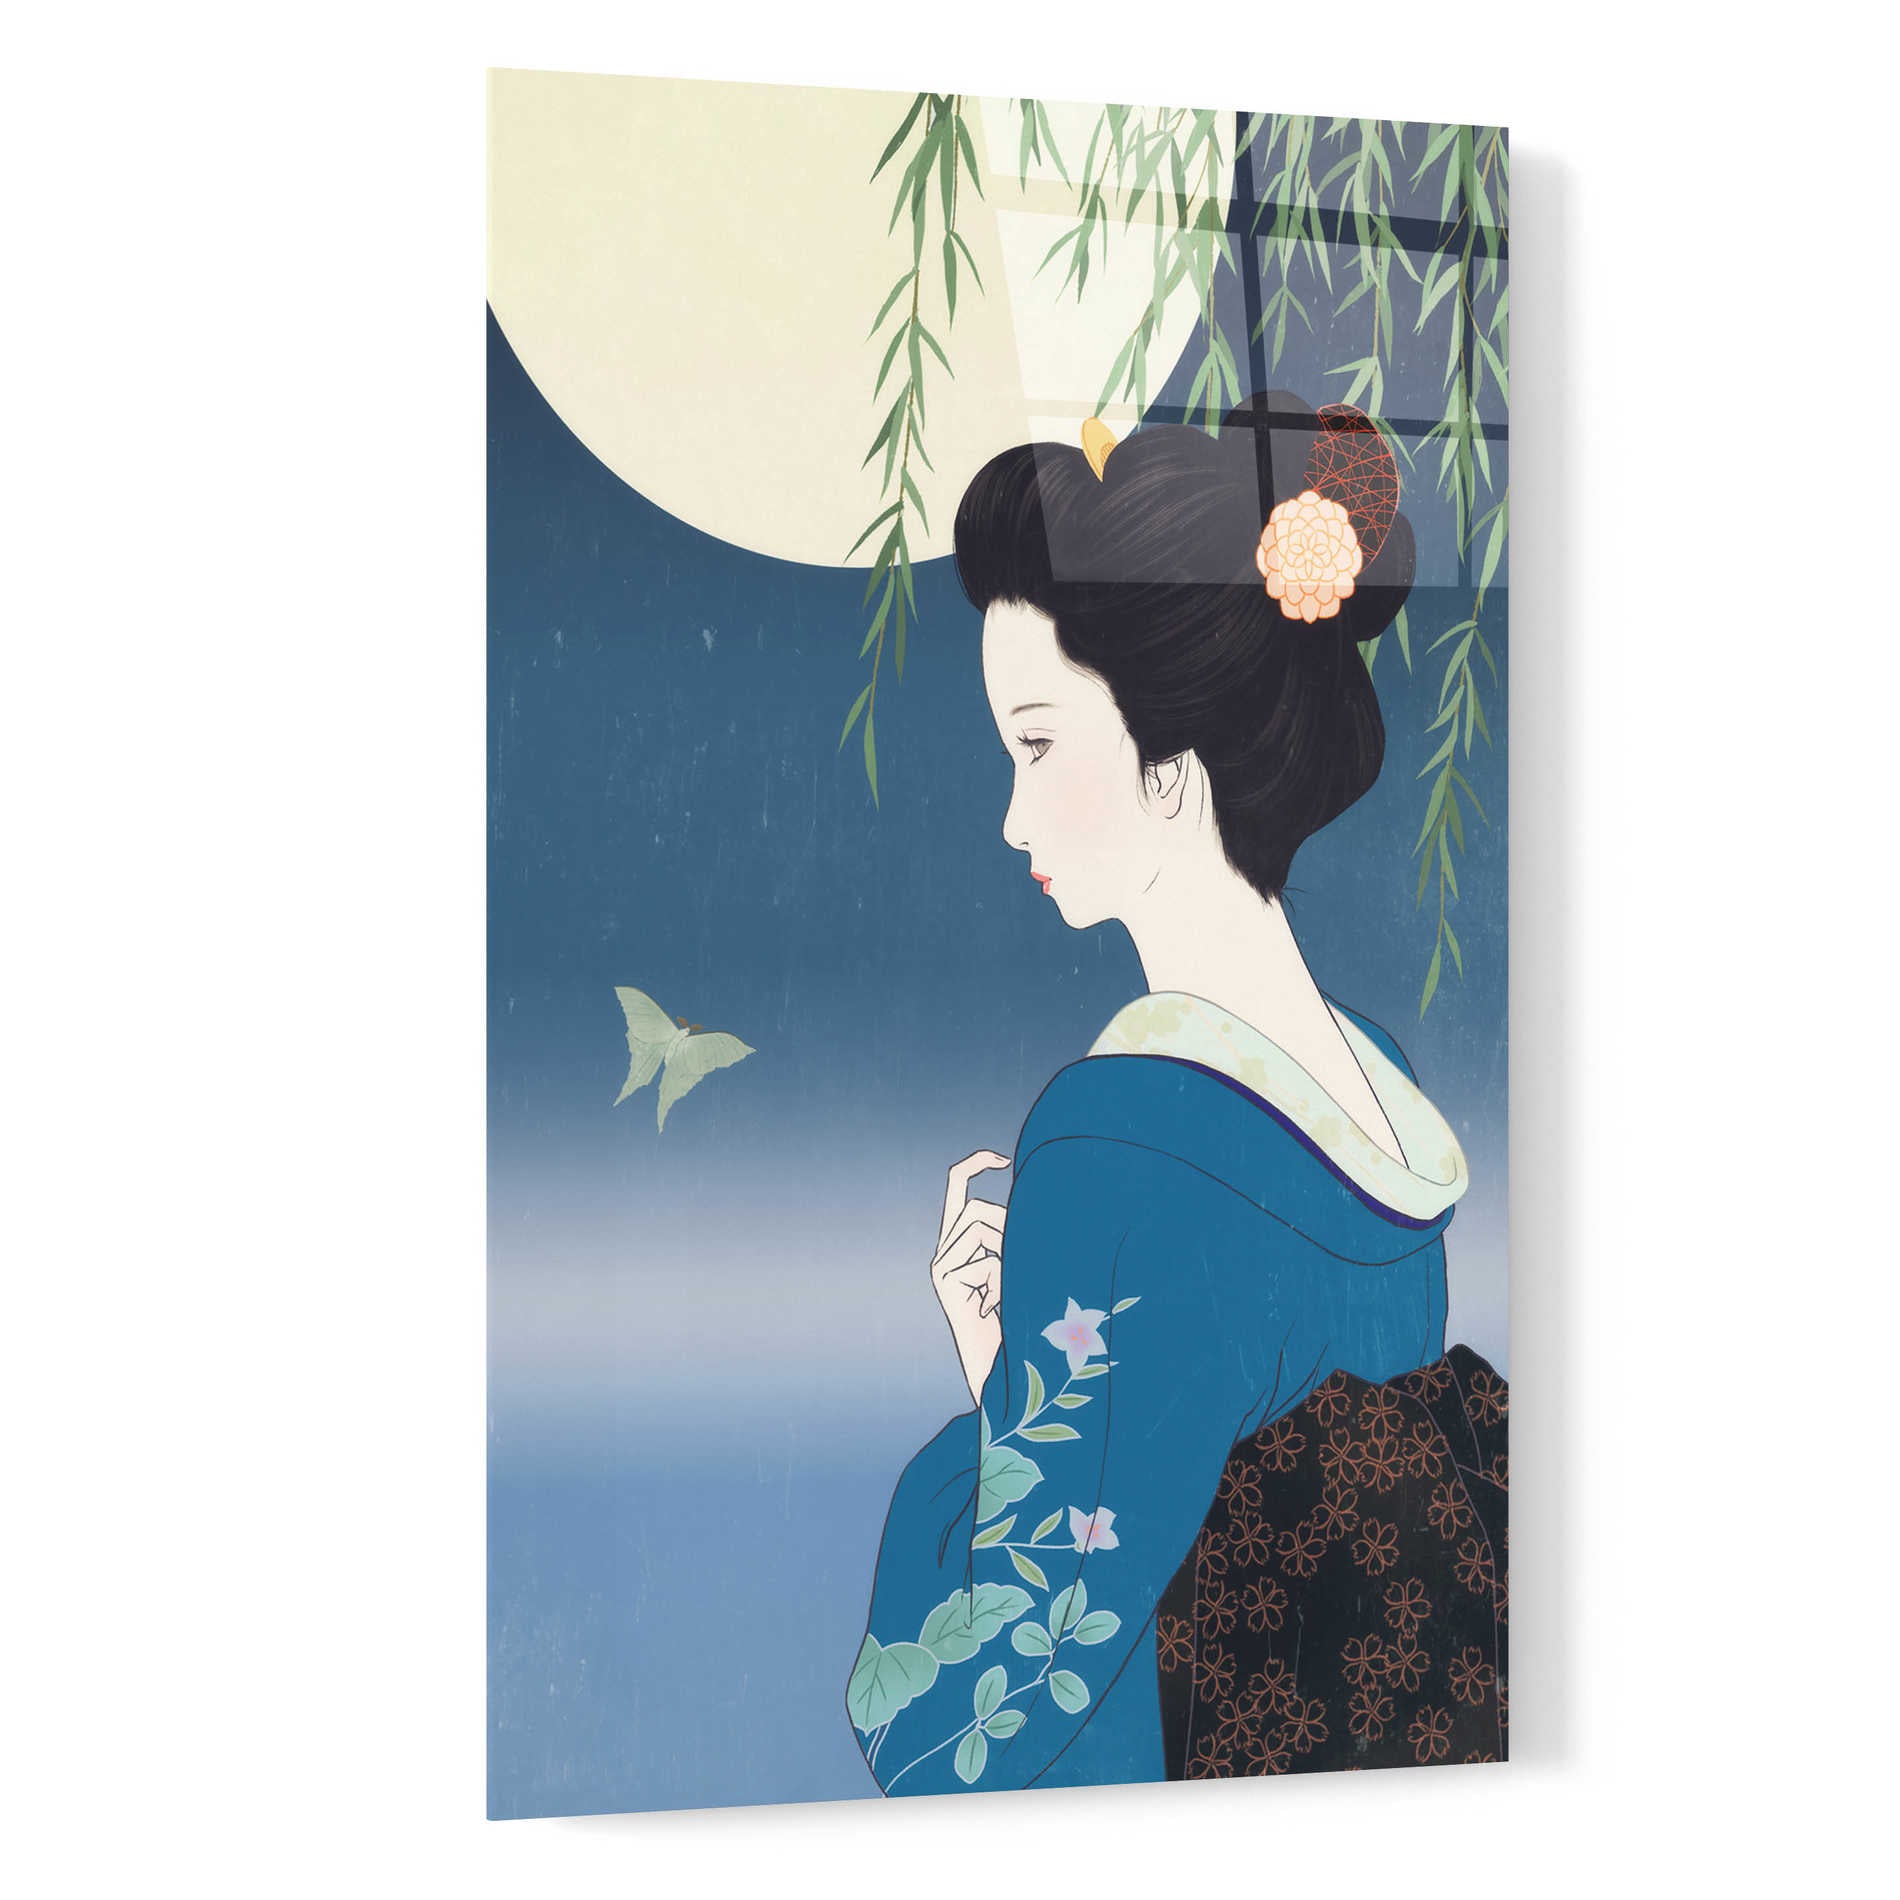 Epic Art 'Fumitsuki' by Sai Tamiya, Acrylic Glass Wall Art,16x24